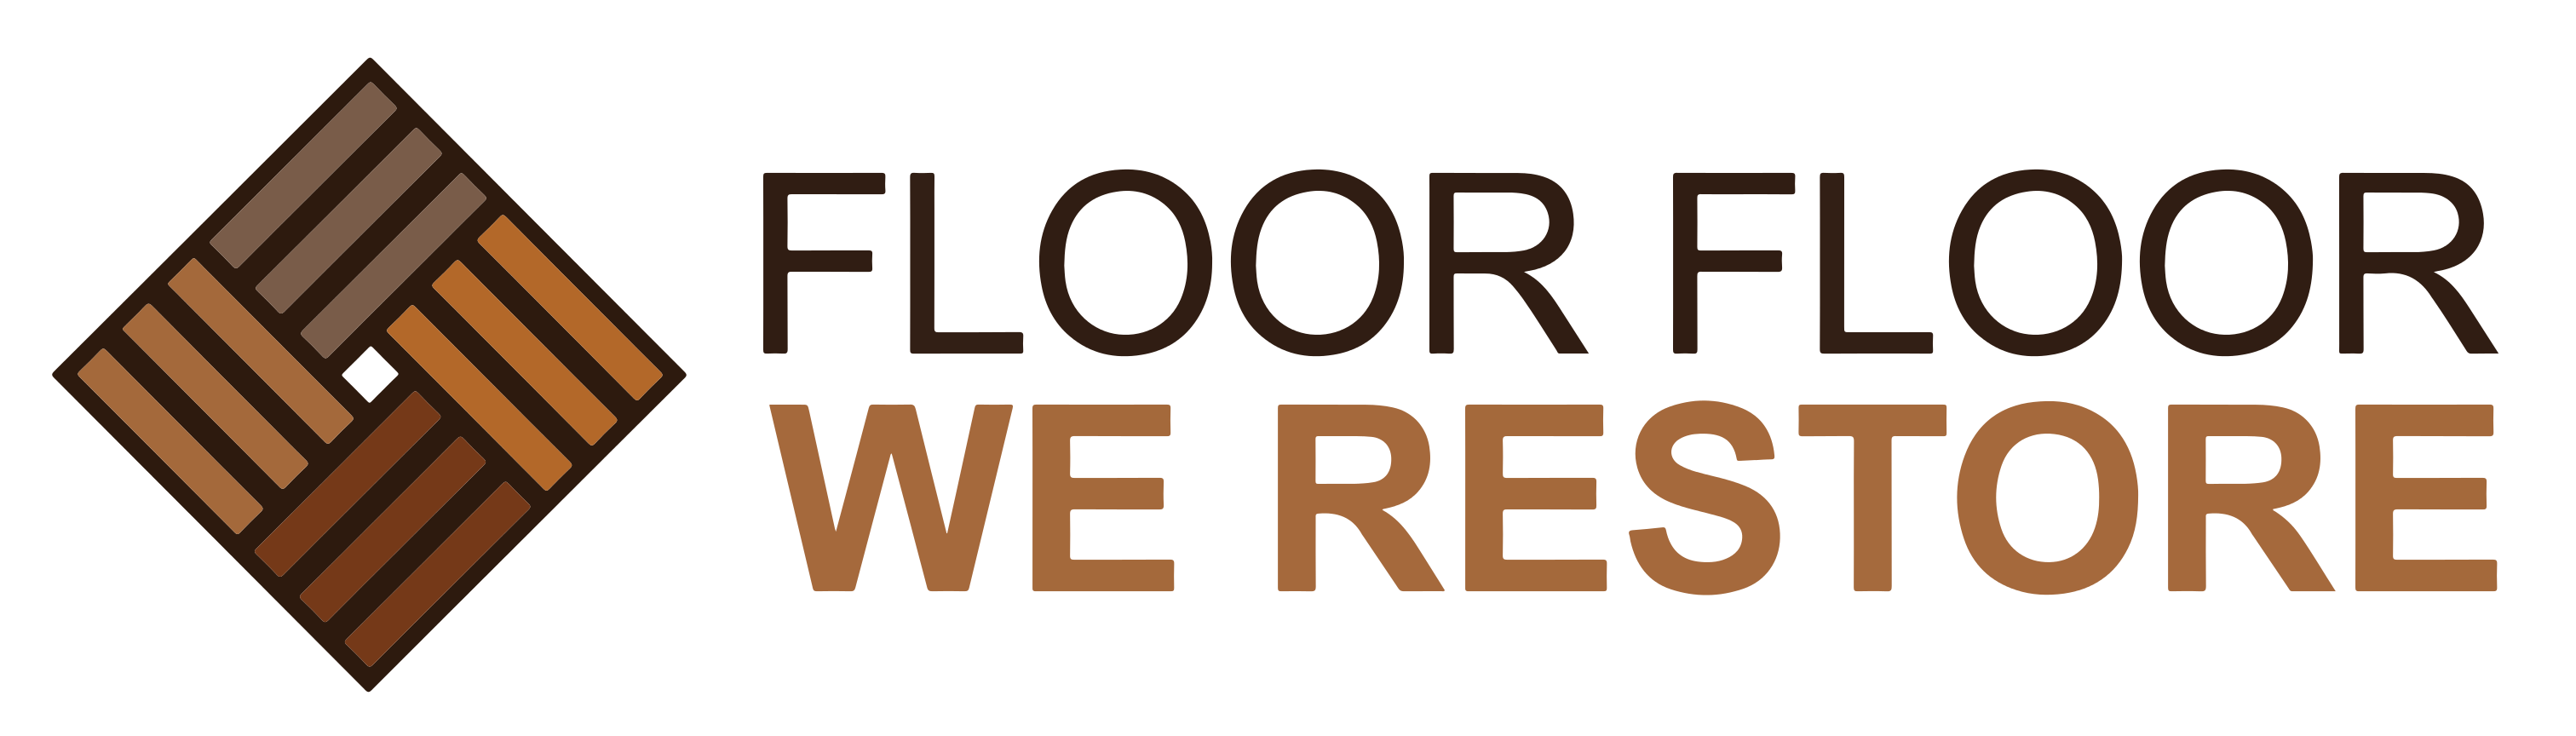 Floor Floor We Restore